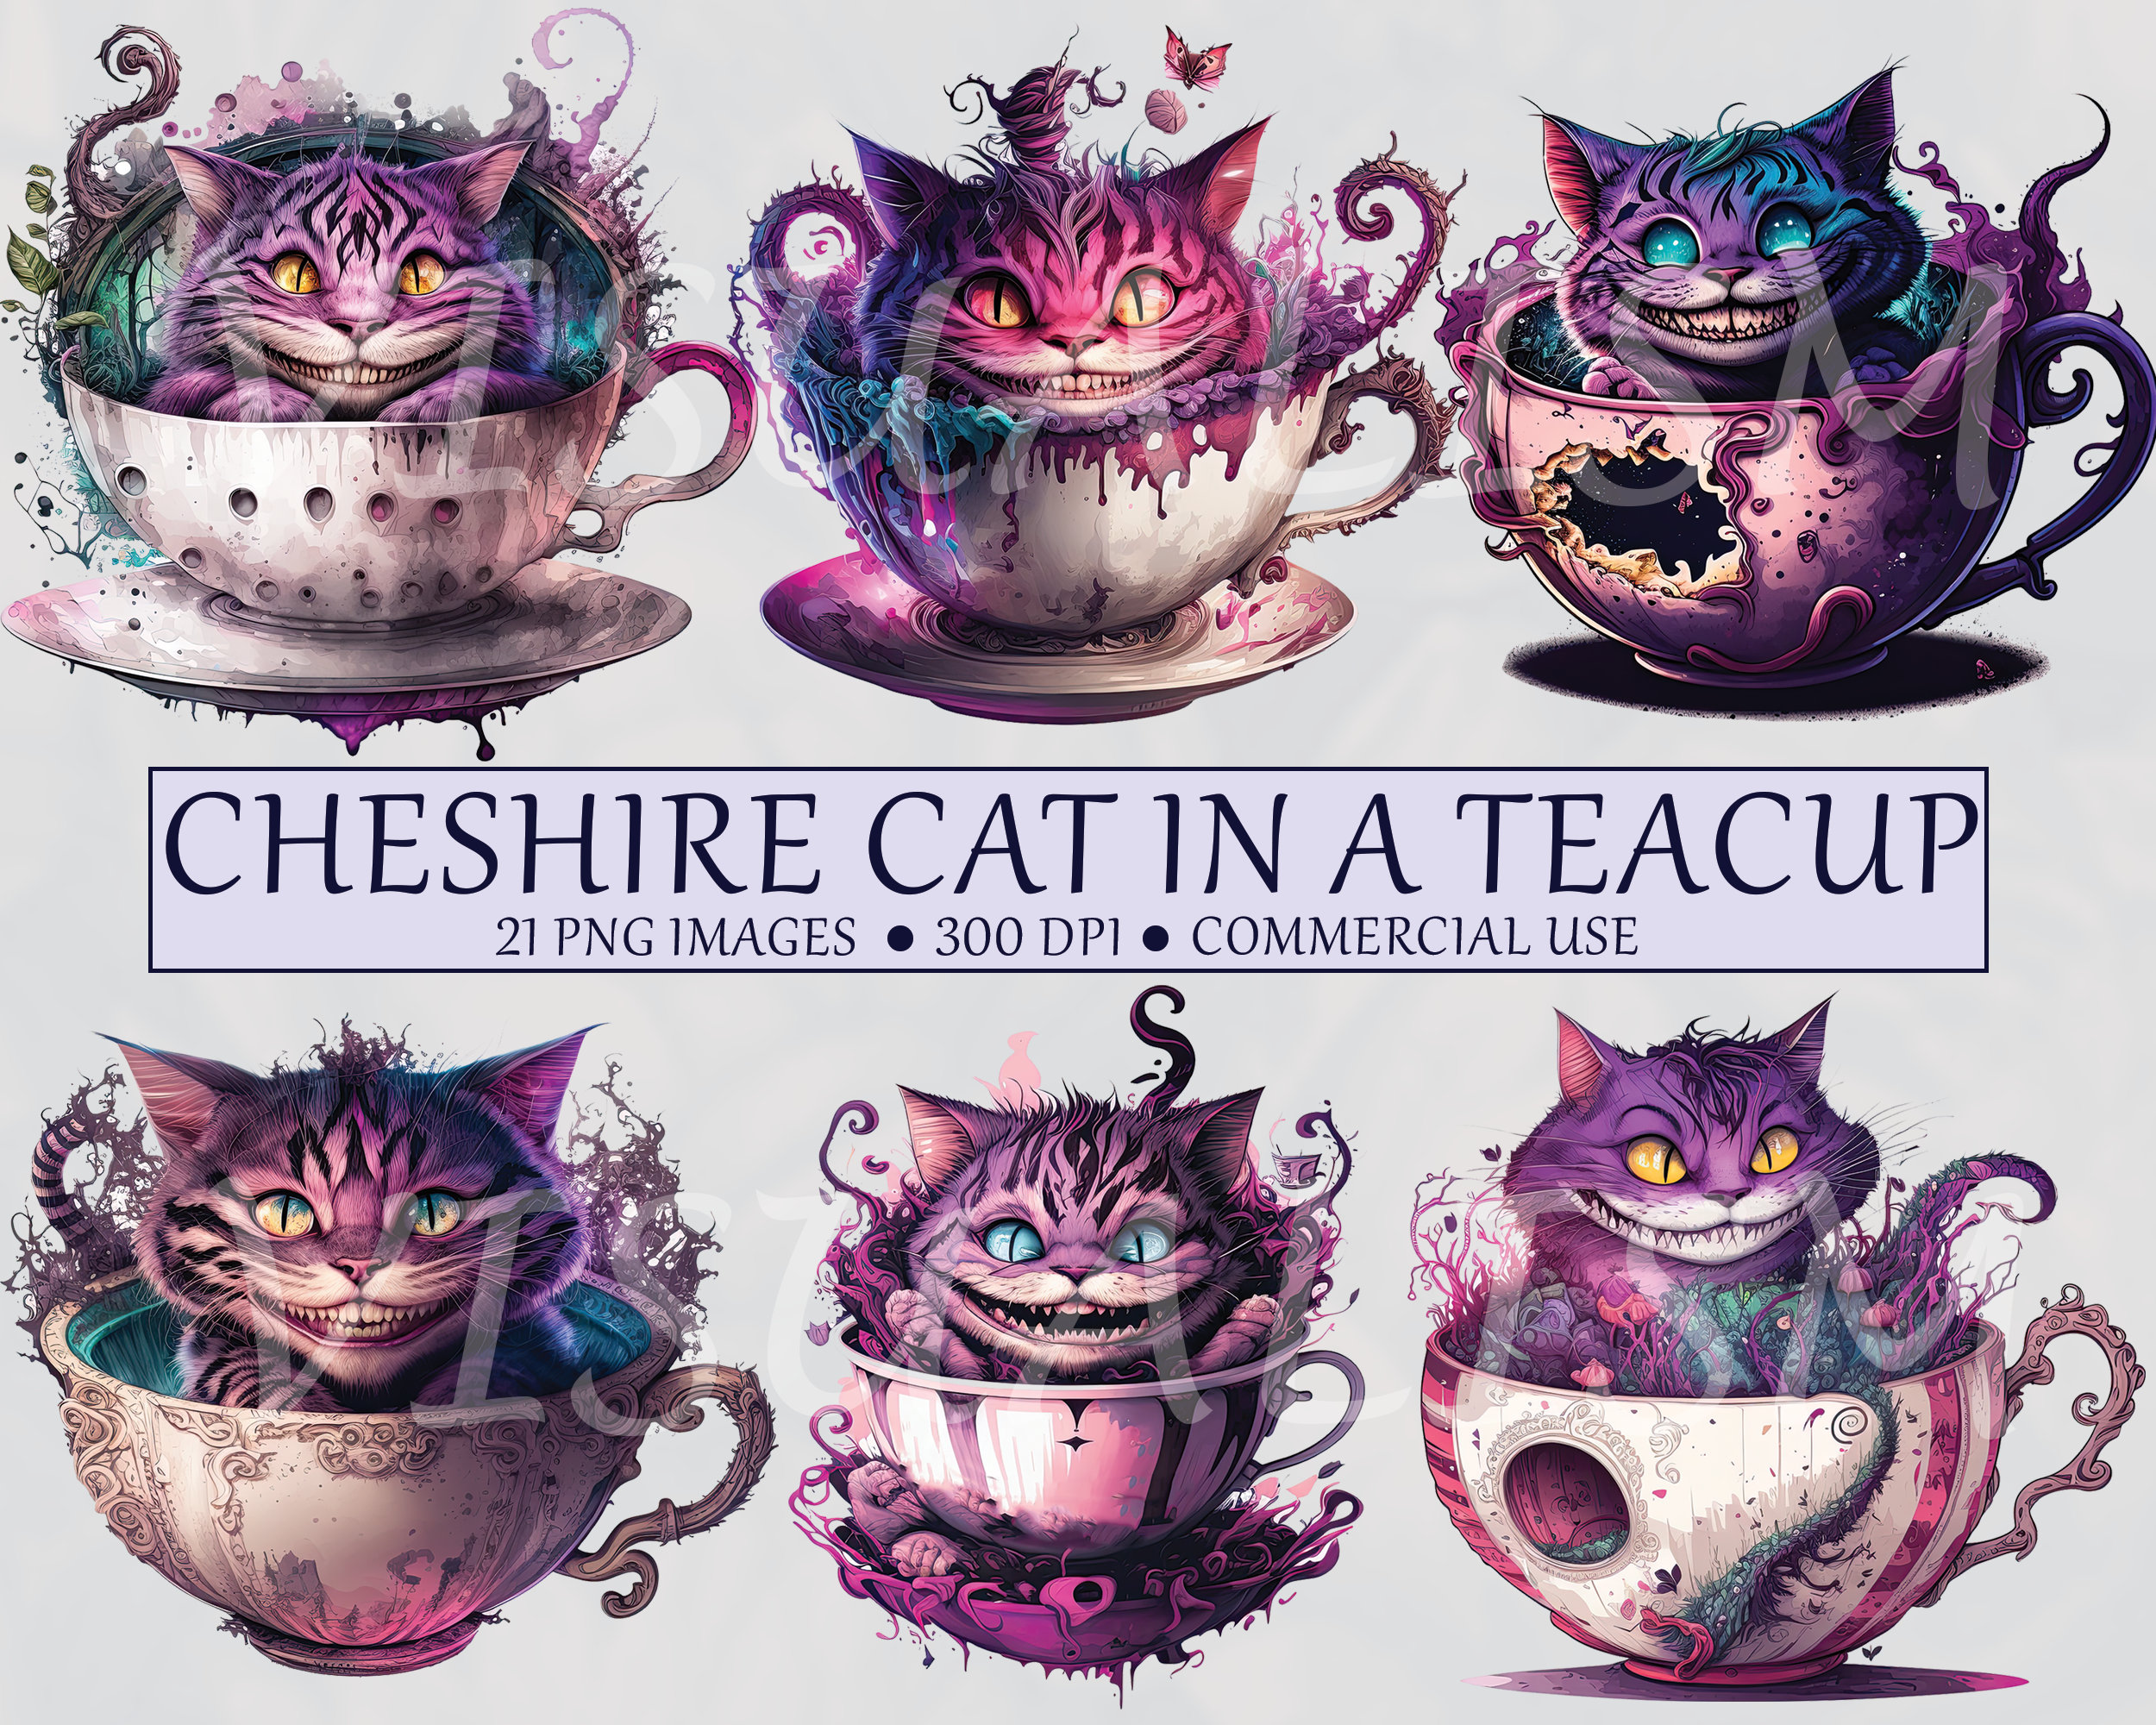 Verrückte Grinsekatze - Crazy Cheshire Cat Face Sticker